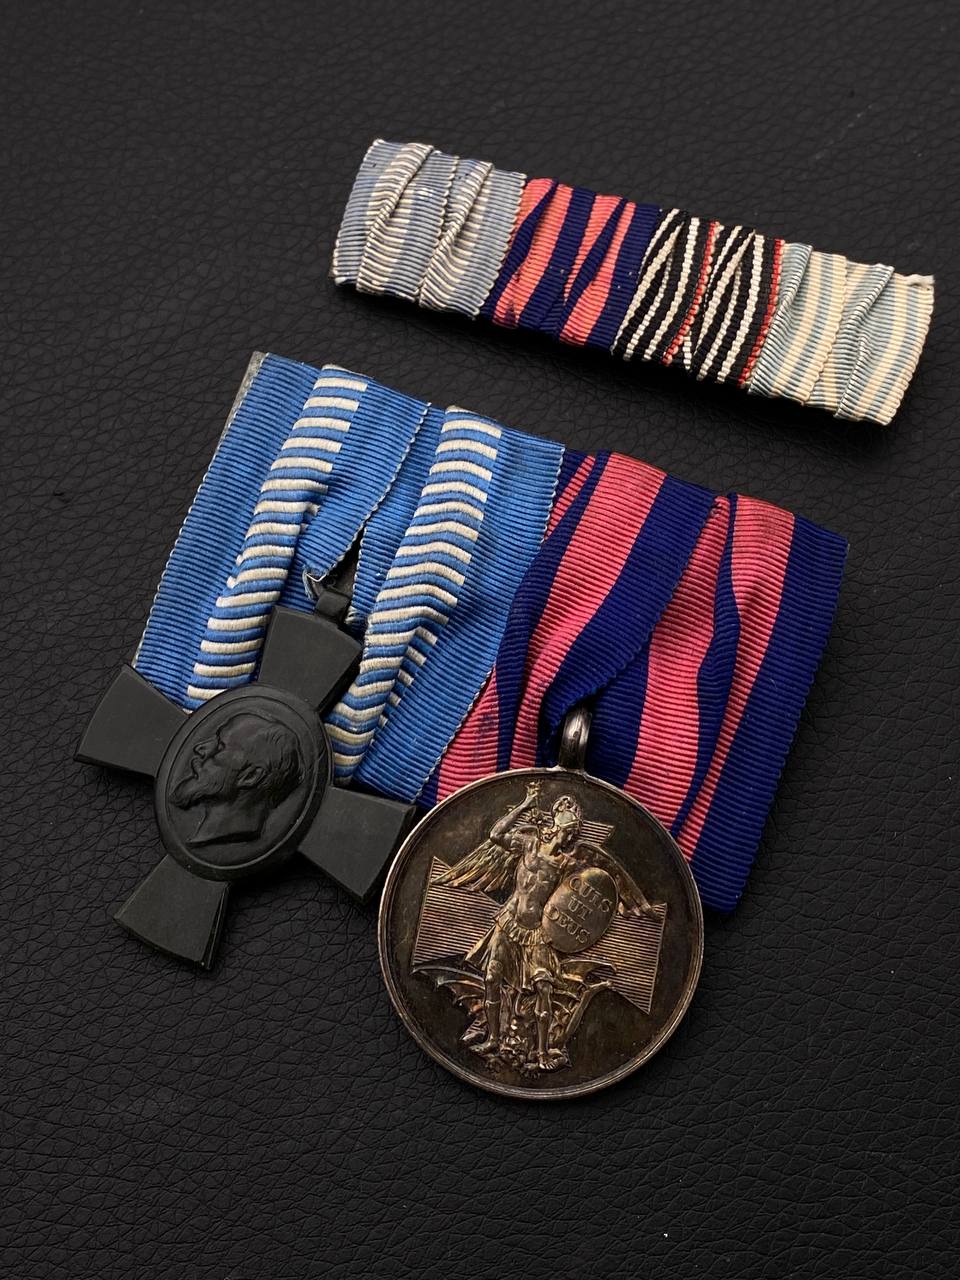 Орденская колодка на две награды периода Первой Мировой войны, принадлежавшая государственному чиновнику королевства Бавария в комплекте с фельдшпангой